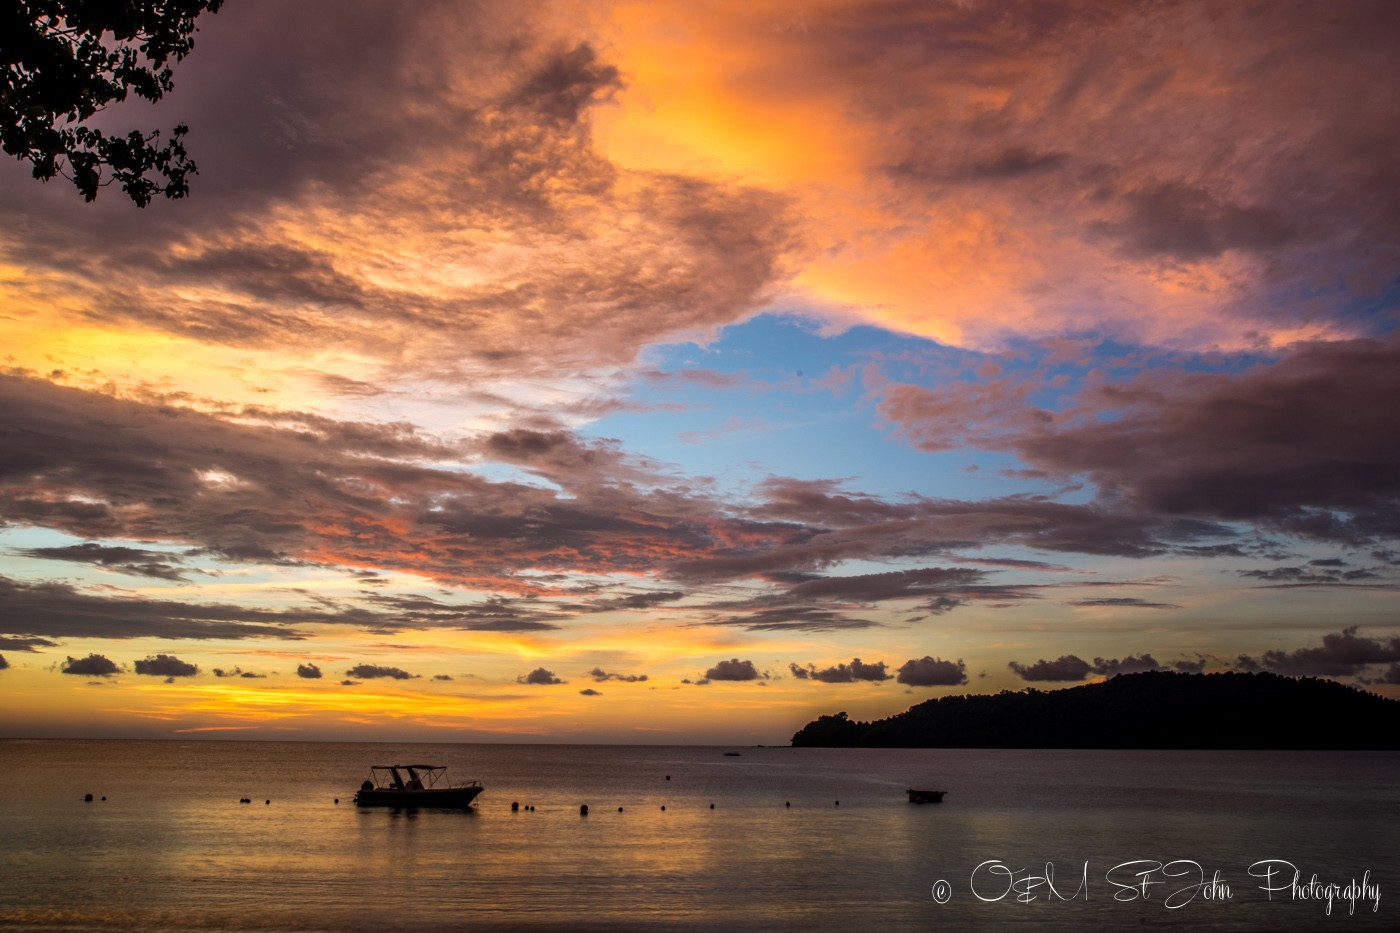 Sunset at Mañana Borneo Resort, Sabah